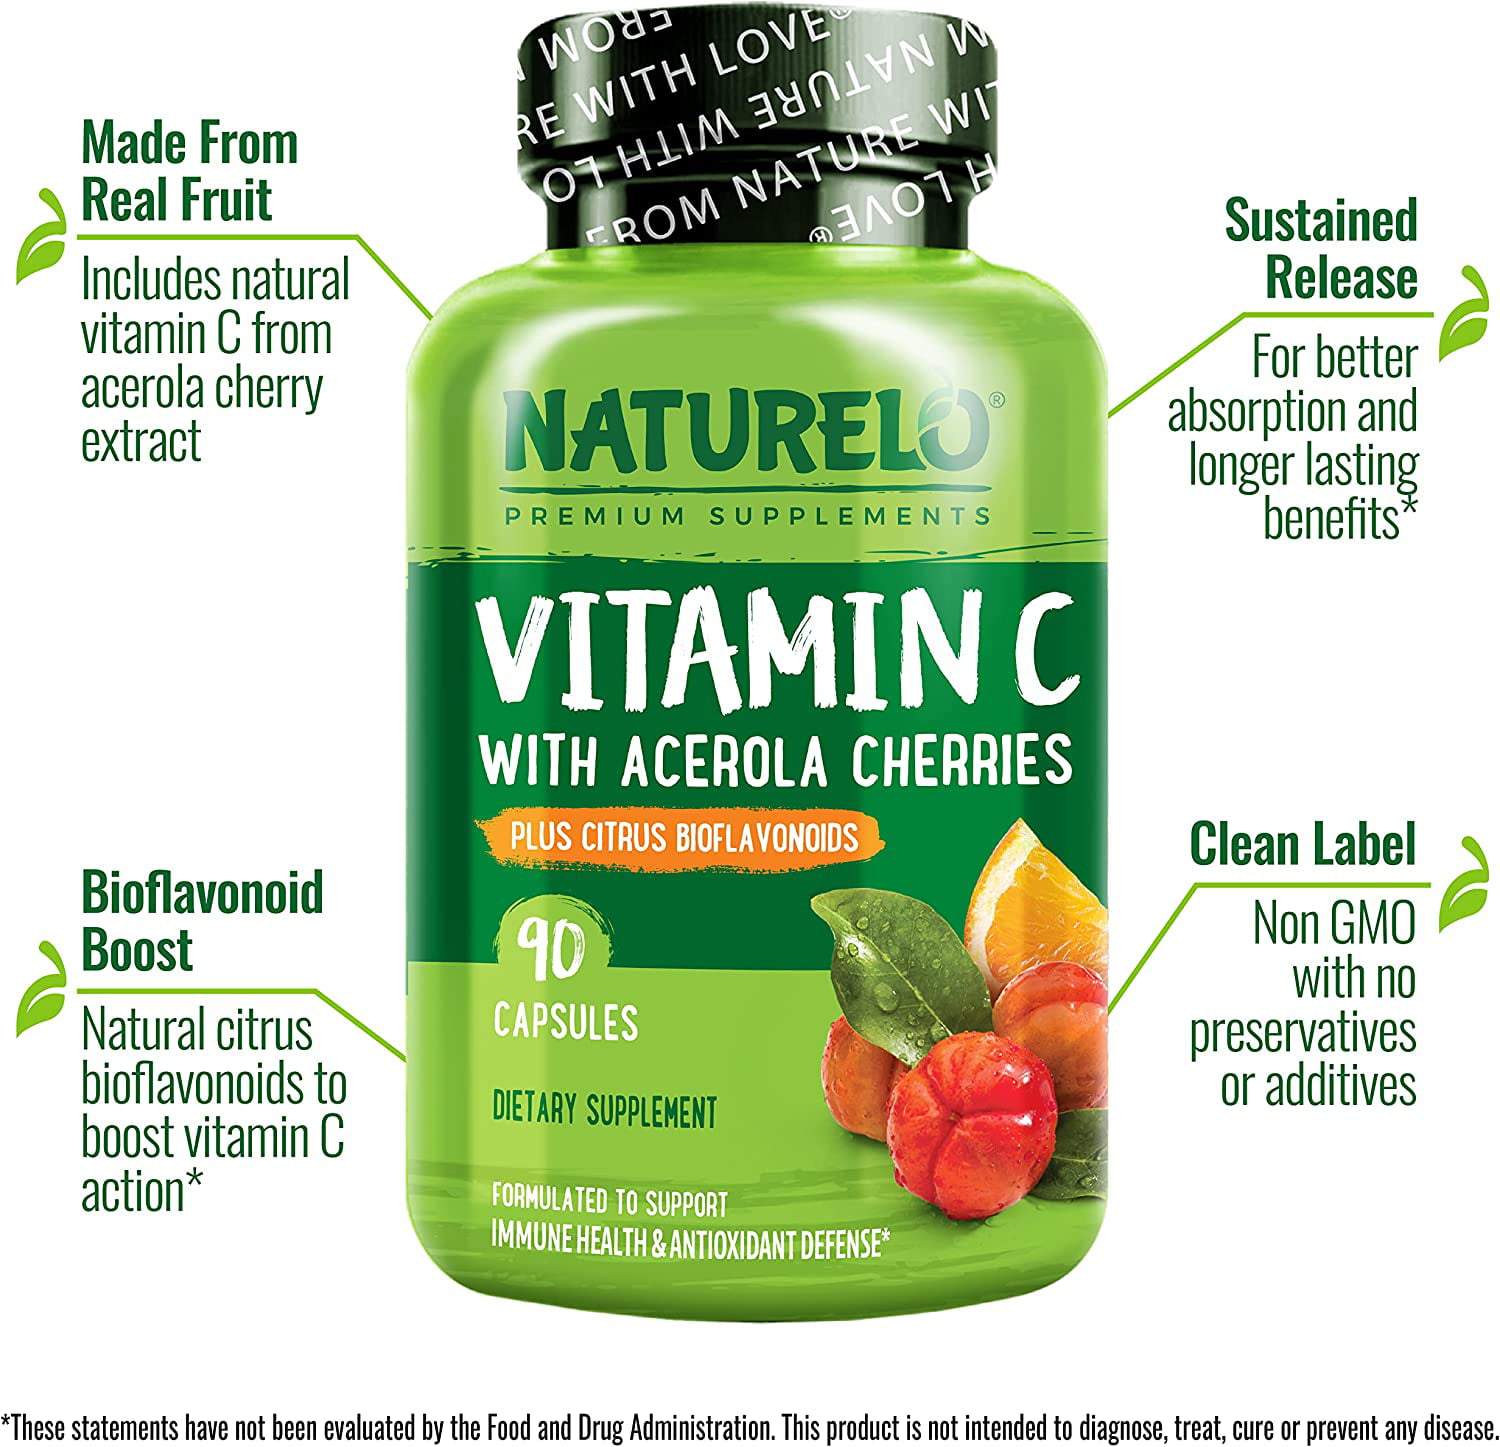 NATURELO Vitamin C with Organic Acerola Cherry Extract and Citrus  Bioflavonoids - Vegan Supplement - Immune Support - 500 mg VIT C per Cap -  Non-GMO - 90 Capsules 